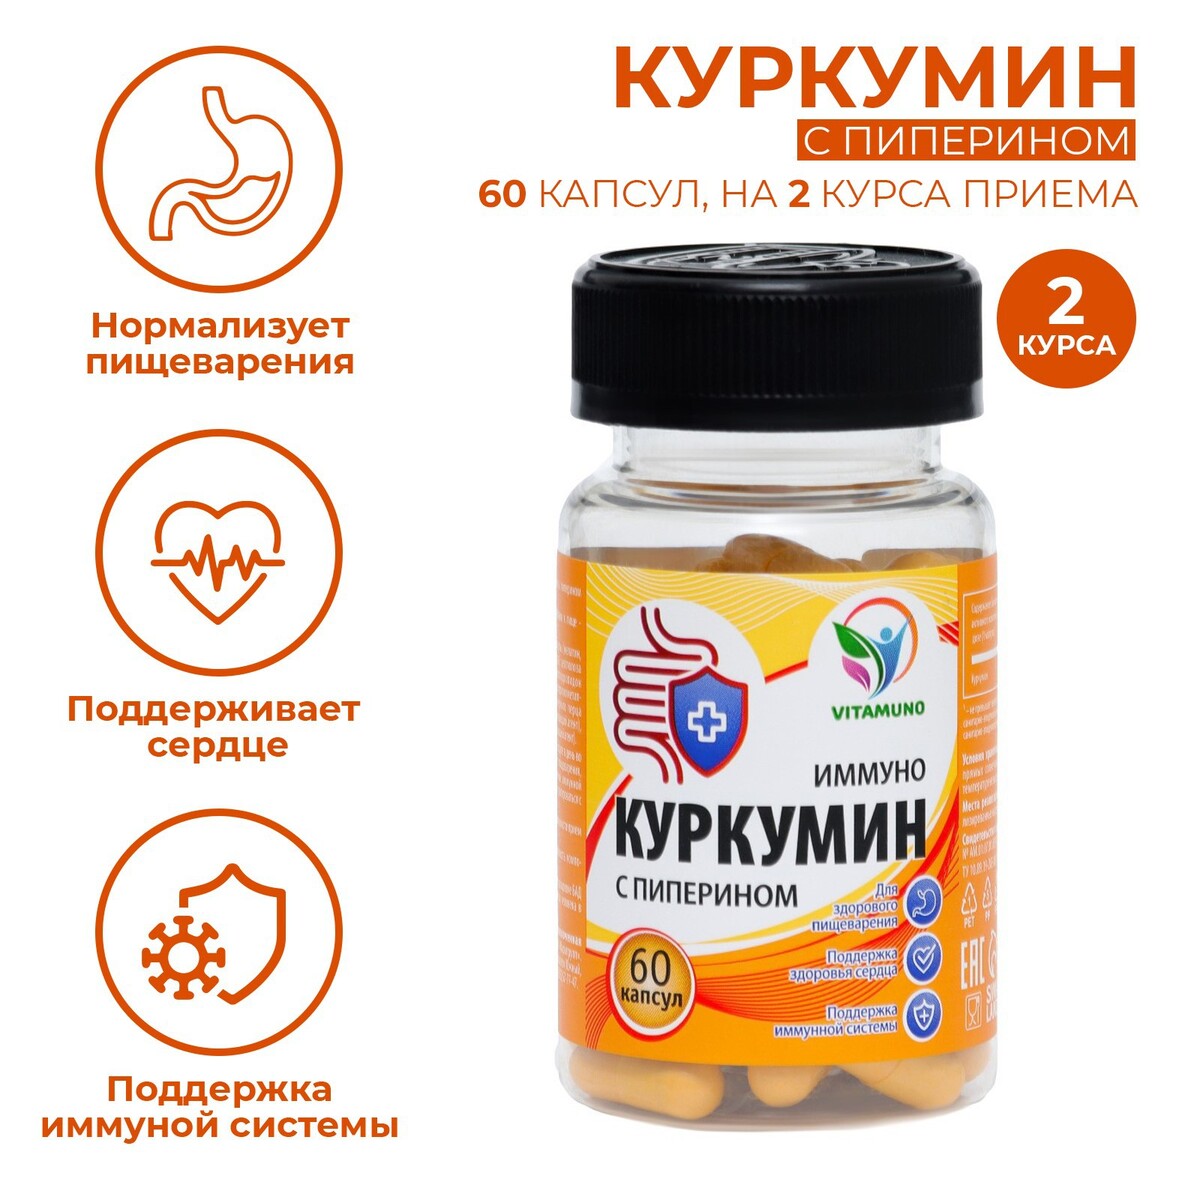 Куркумин с пиперином иммуно, 60 капсул по 0,4 г nutricar liposomal curcumin липосомальный куркумин витамин кидс веган 60 капсул